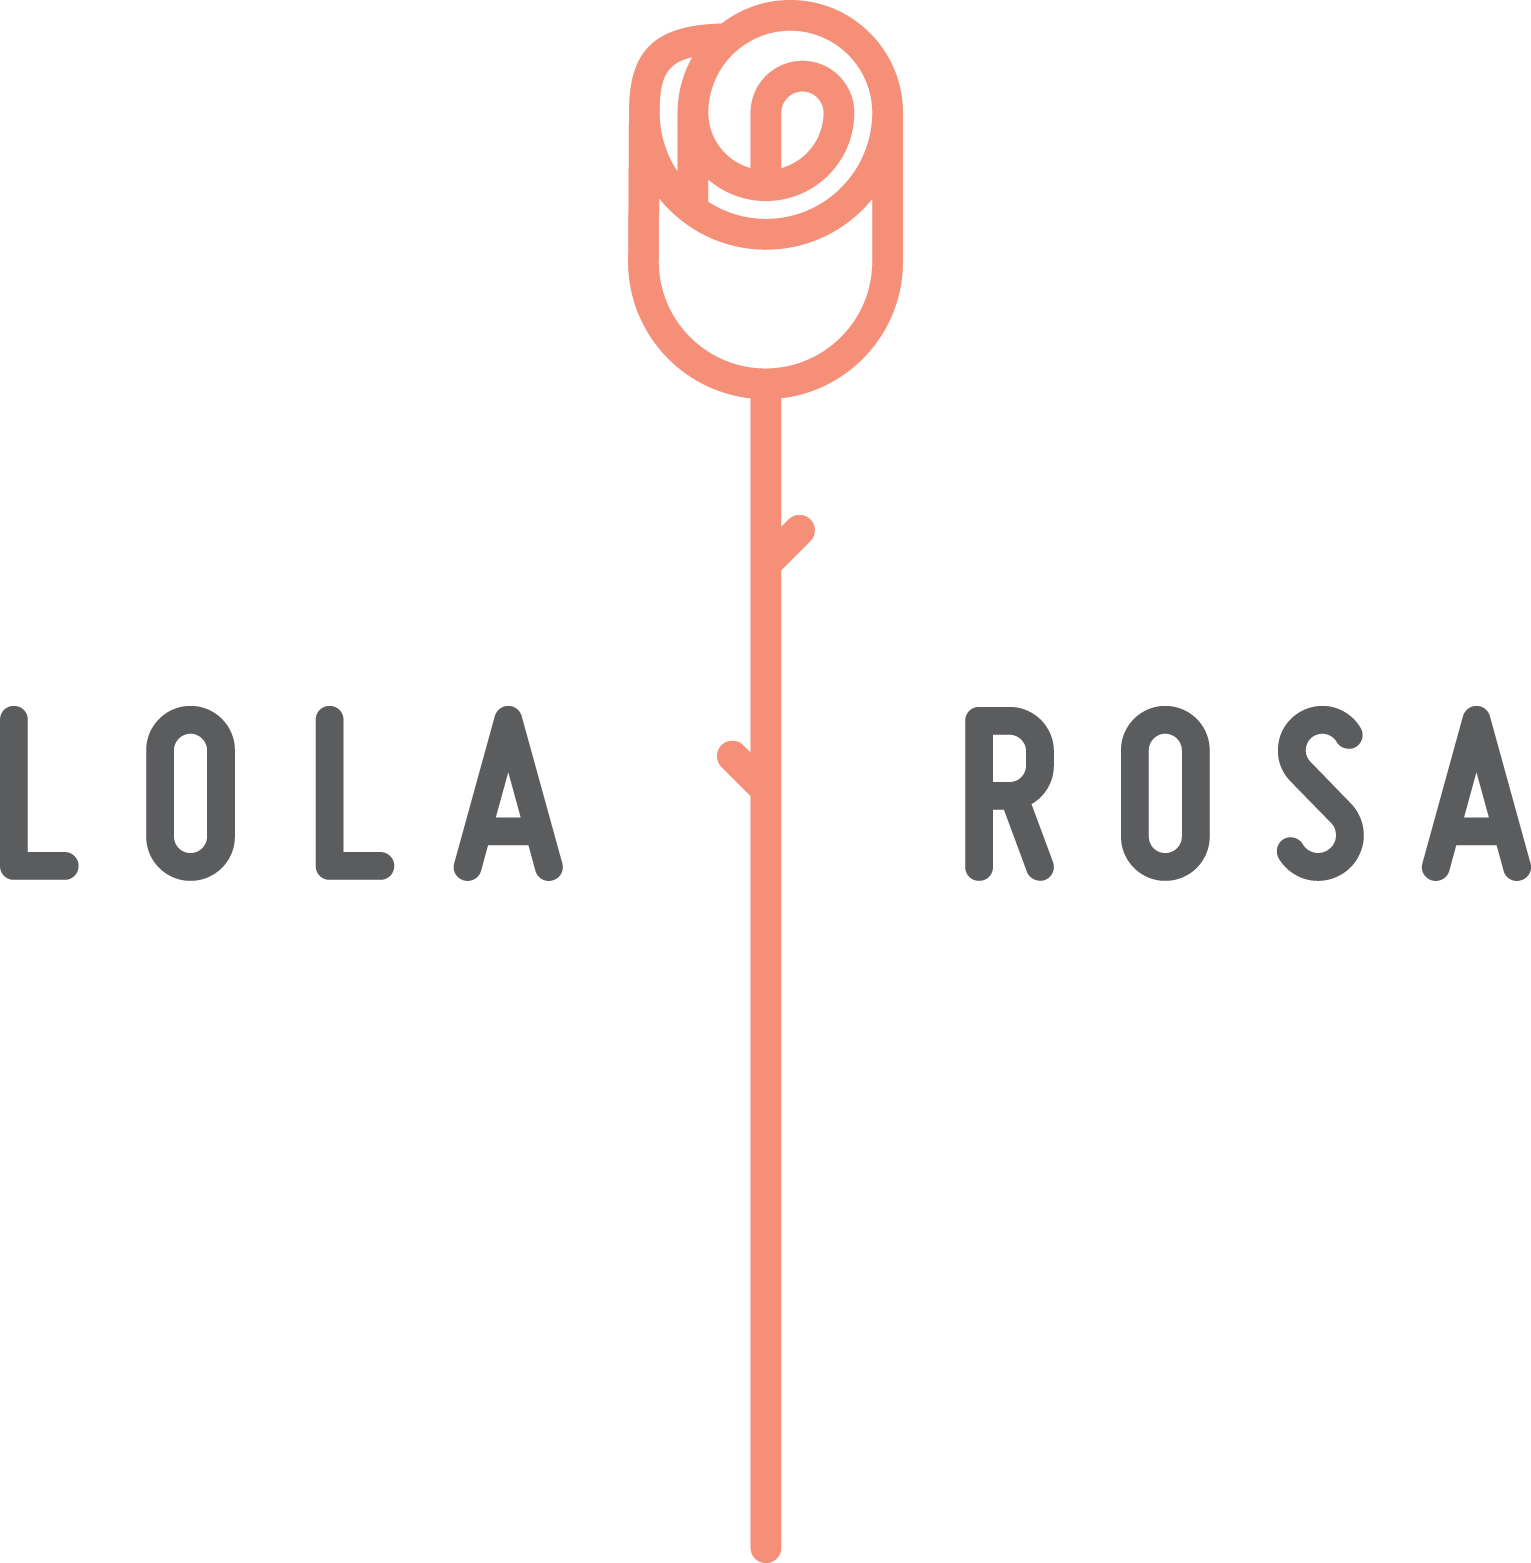 Lola Rosa